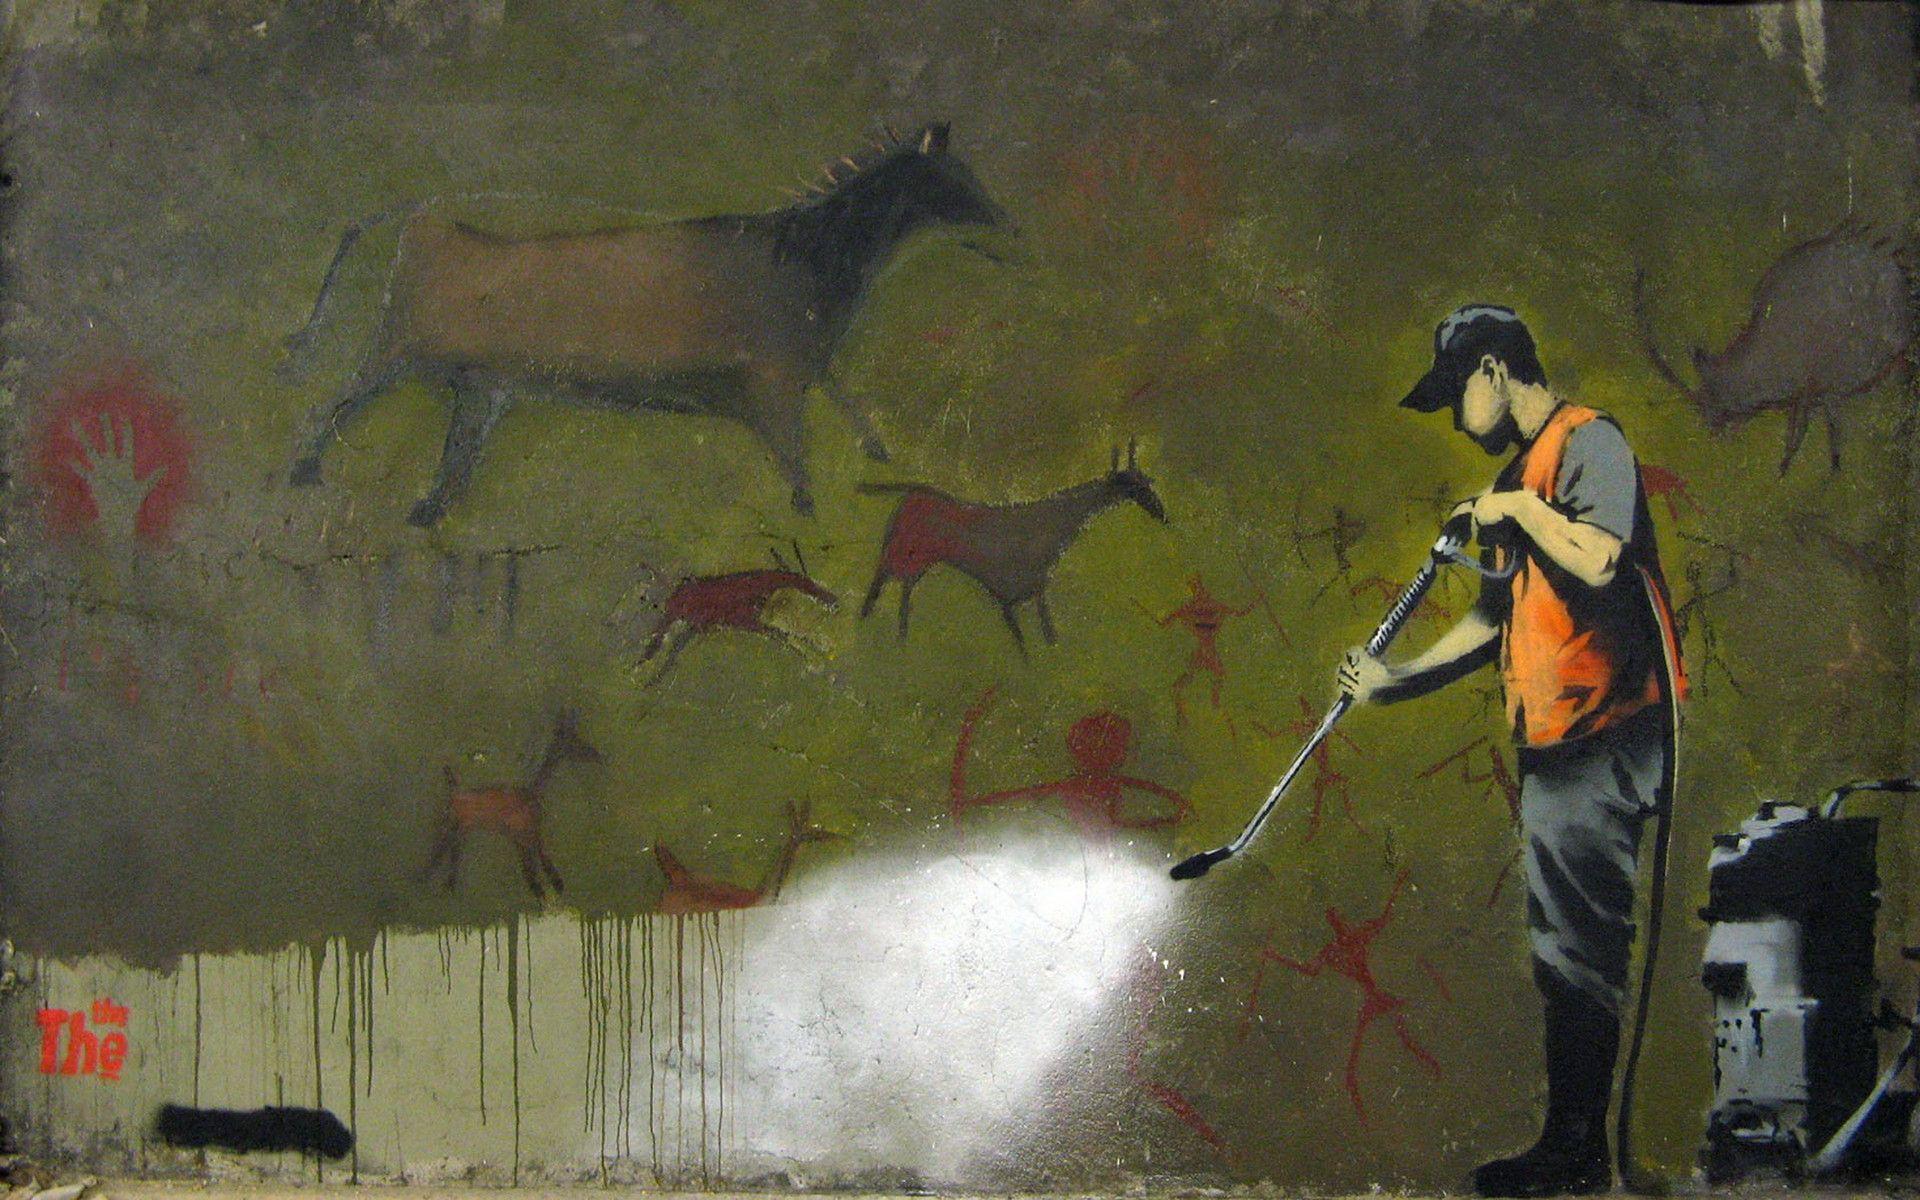 Banksy Wallpaper HD Image 1920x1200PX Banksy Wallpaper